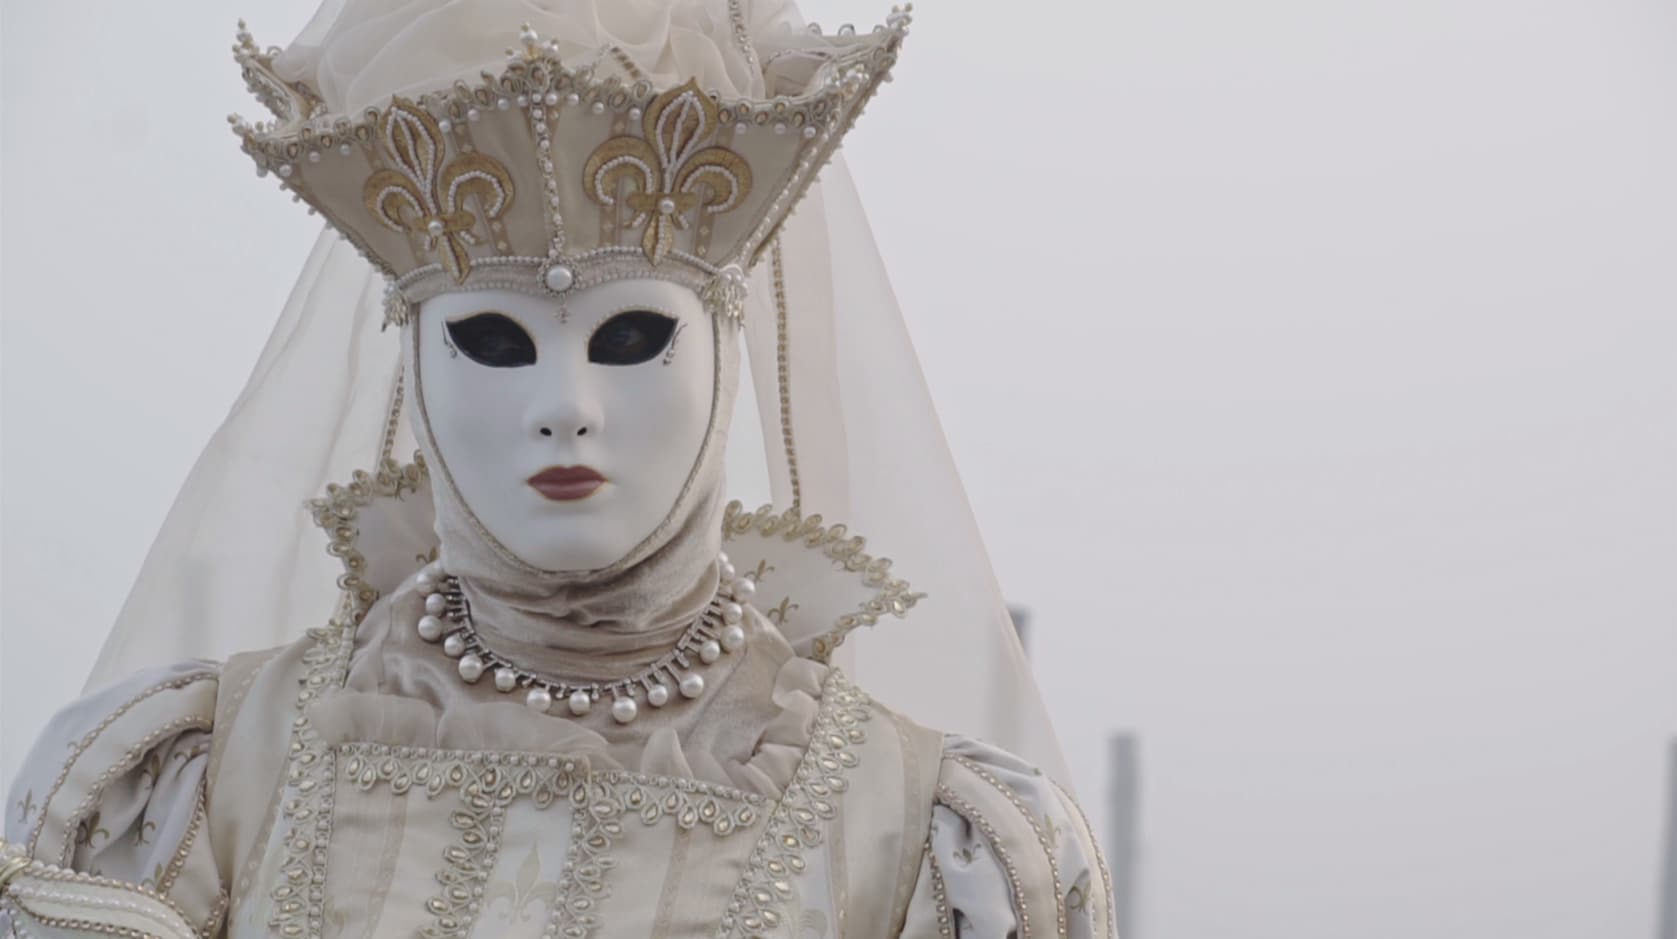 Una delle maschere che popolano lo storico carnevale di Venezia